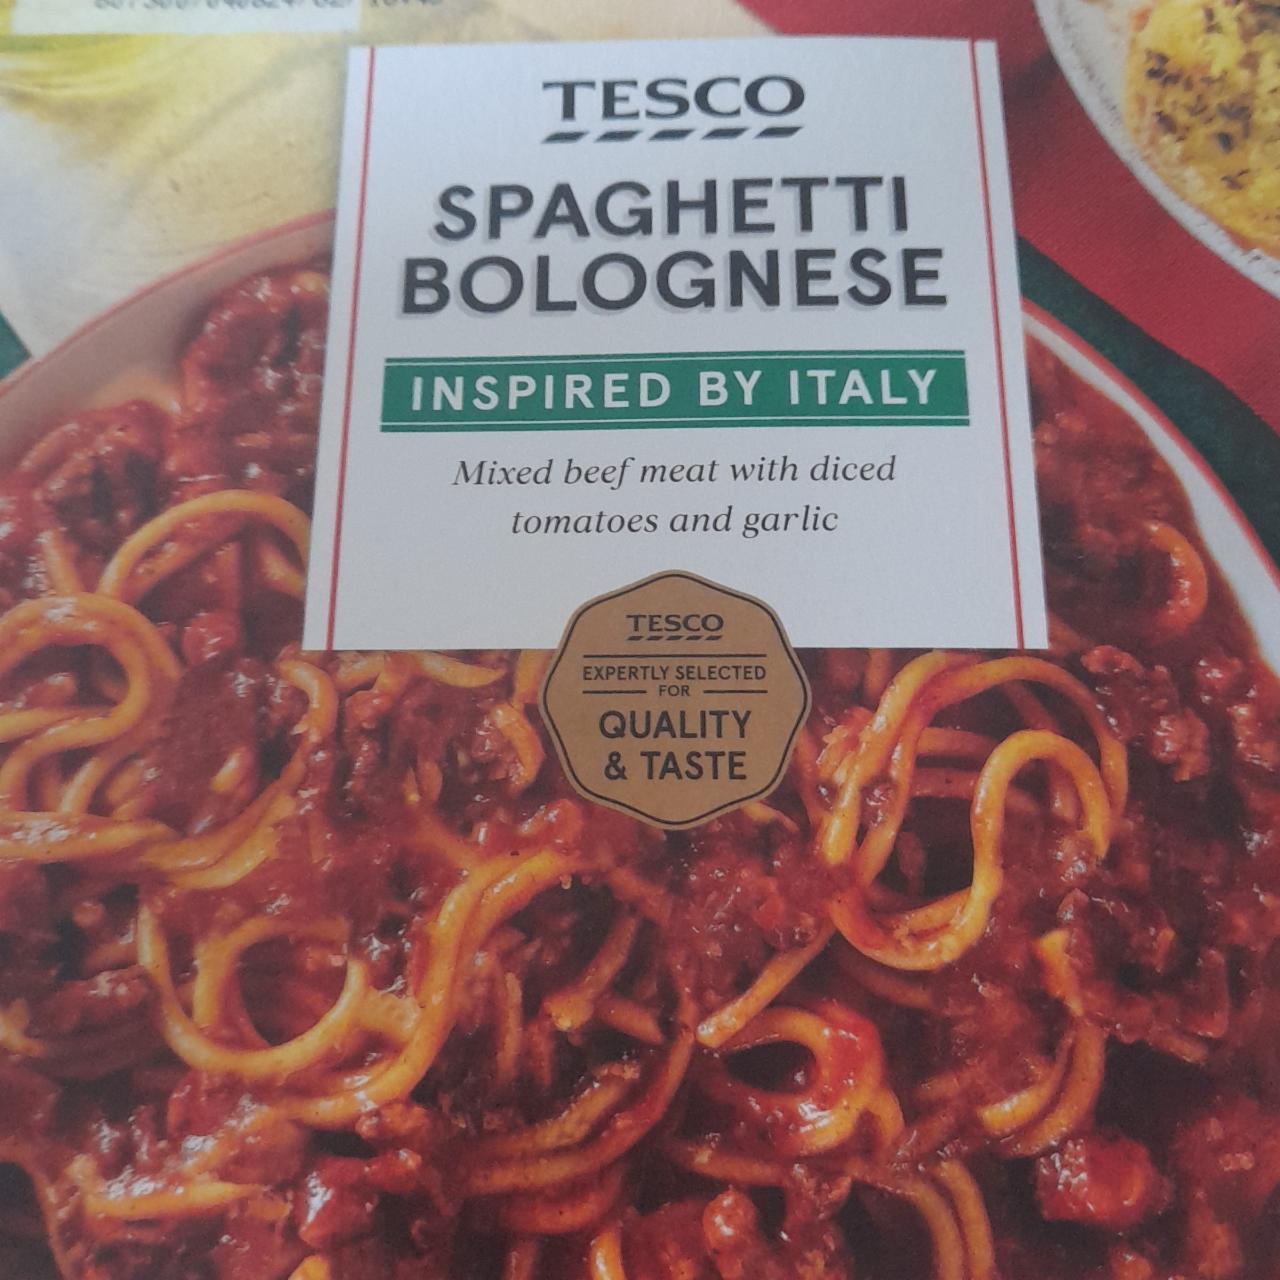 Fotografie - Spaghetti bolognese inspired by italy Tesco